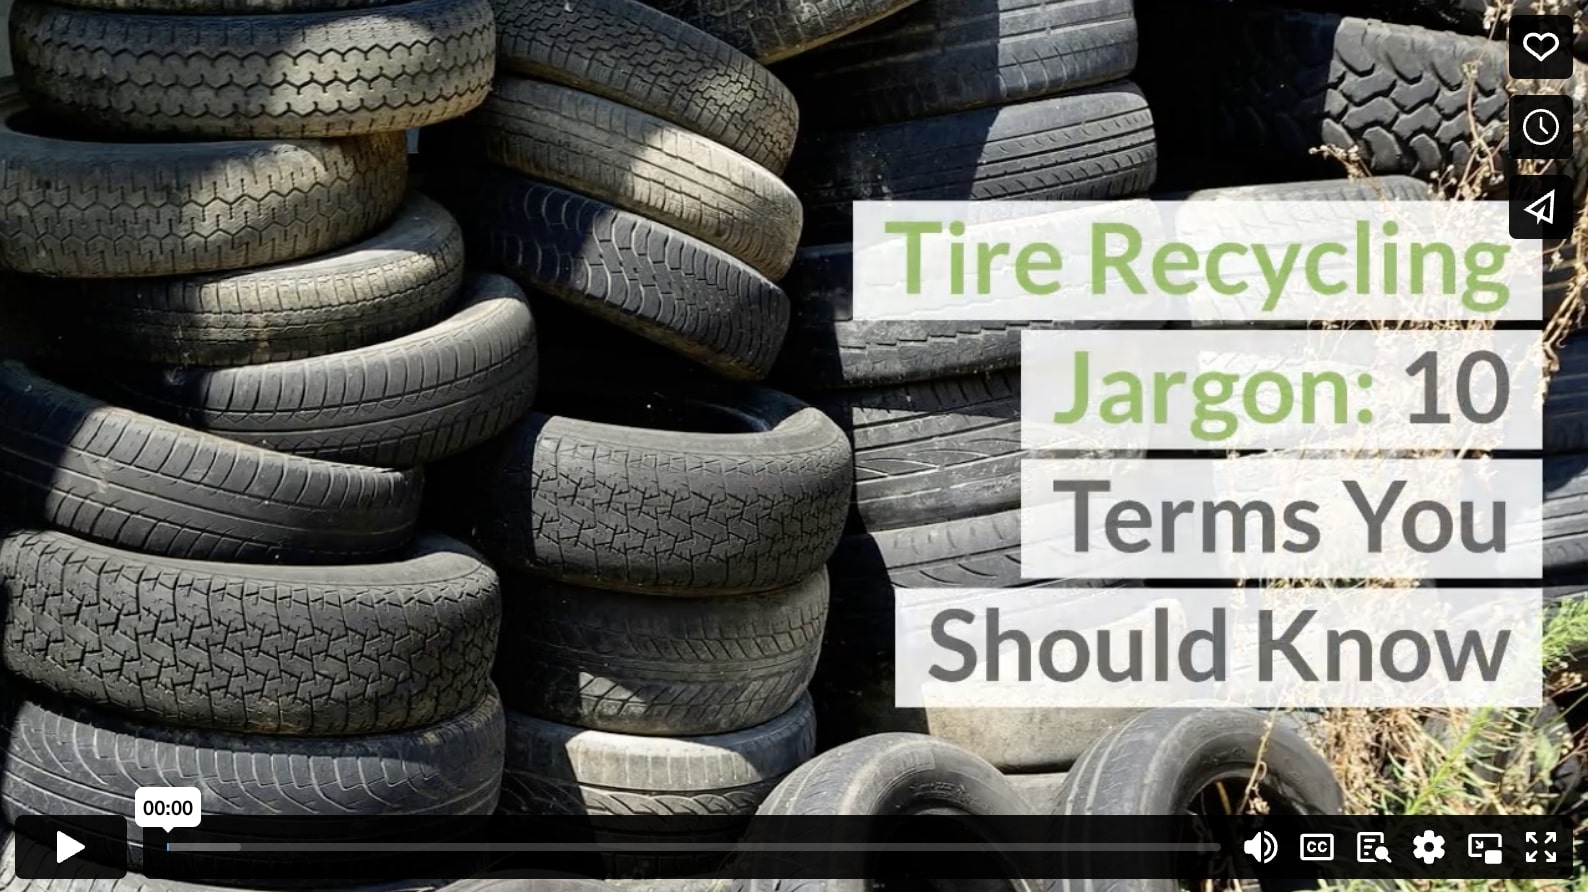 Жаргон, связанный с переработкой шин: 10 терминов, которые вы должны знать